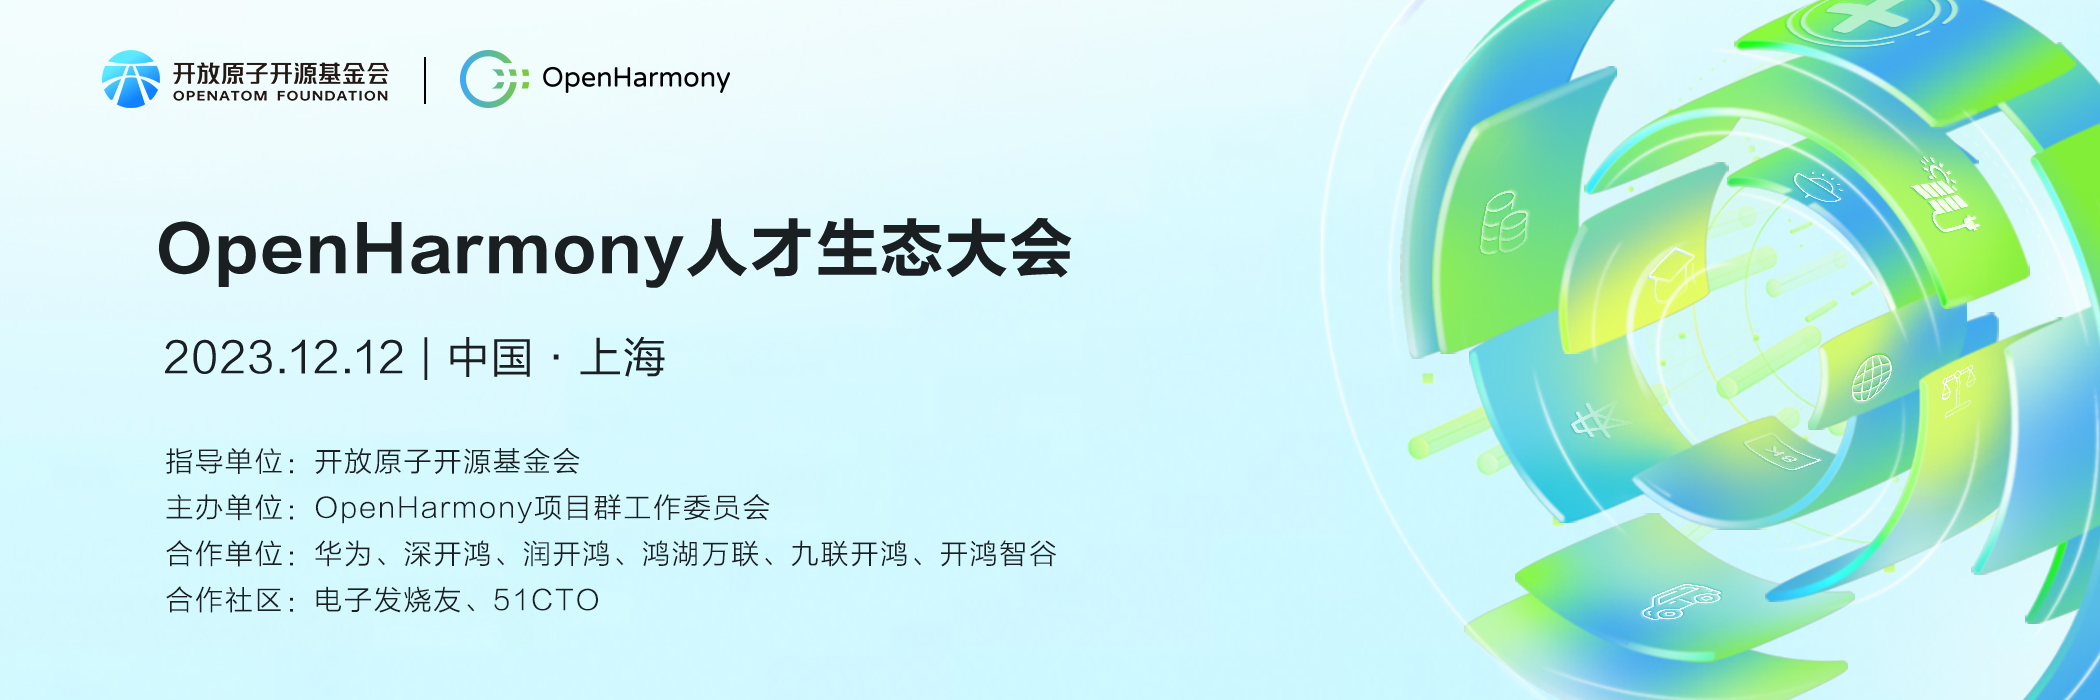 繁荣生态，人才先行︱首届OpenHarmony人才生态大会即将在上海召开-鸿蒙开发者社区